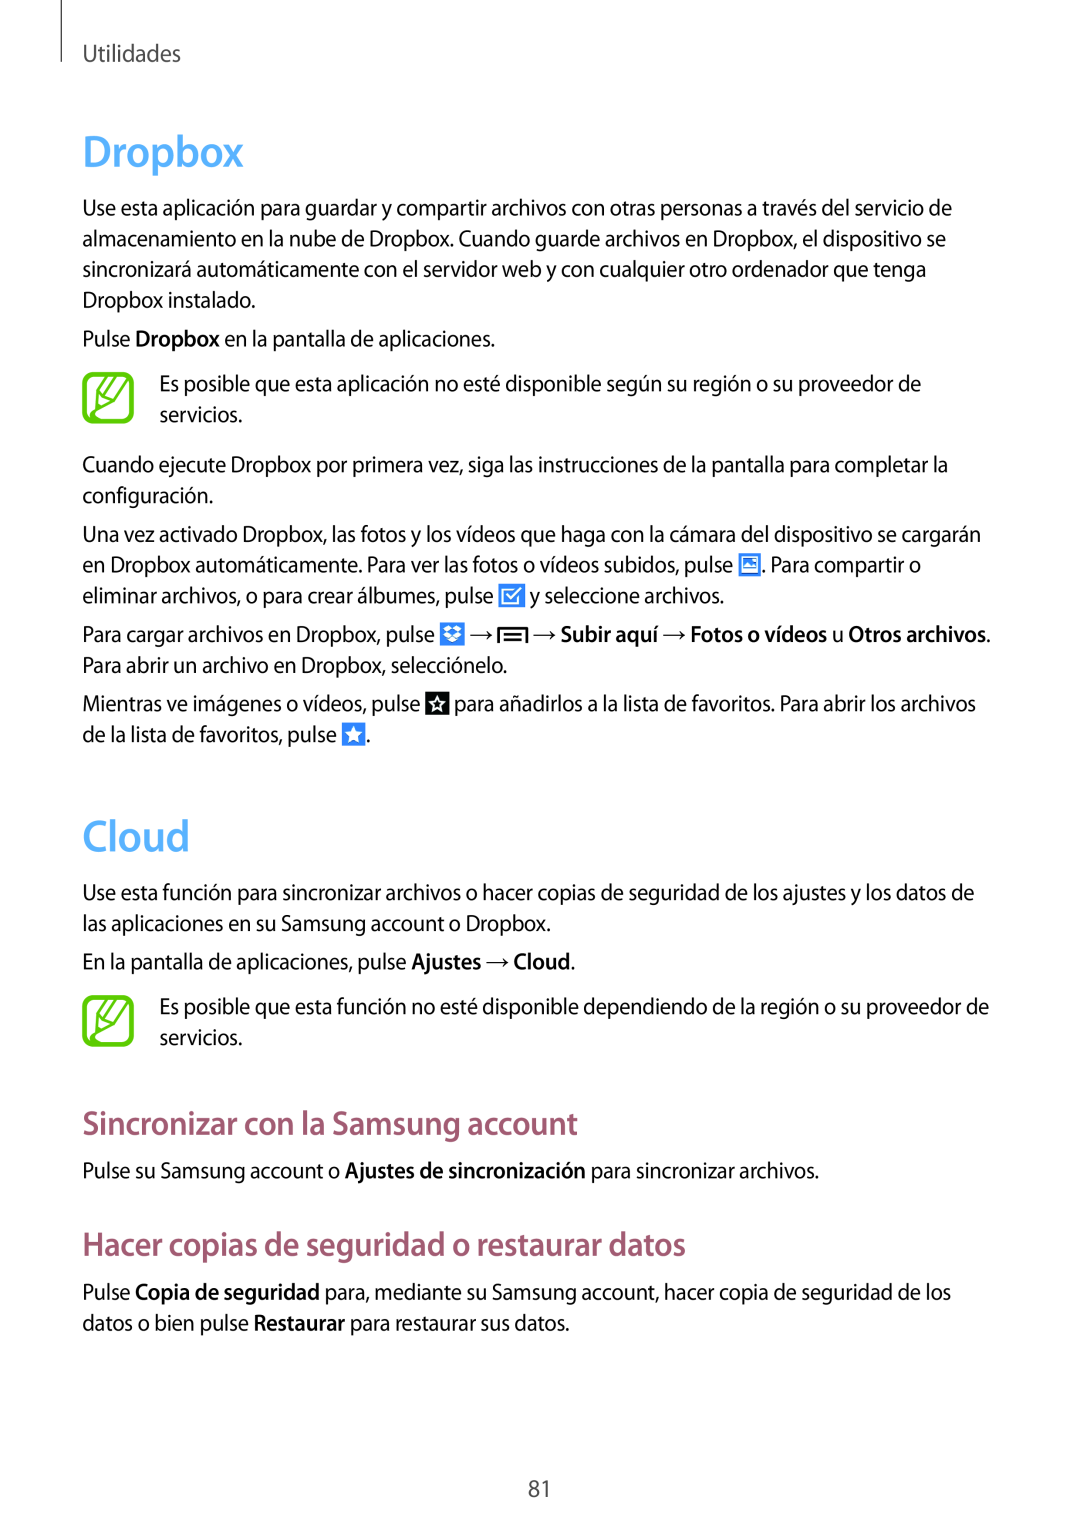 Samsung GT-P5200ZWADBT Dropbox, Cloud, Sincronizar con la Samsung account, Hacer copias de seguridad o restaurar datos 